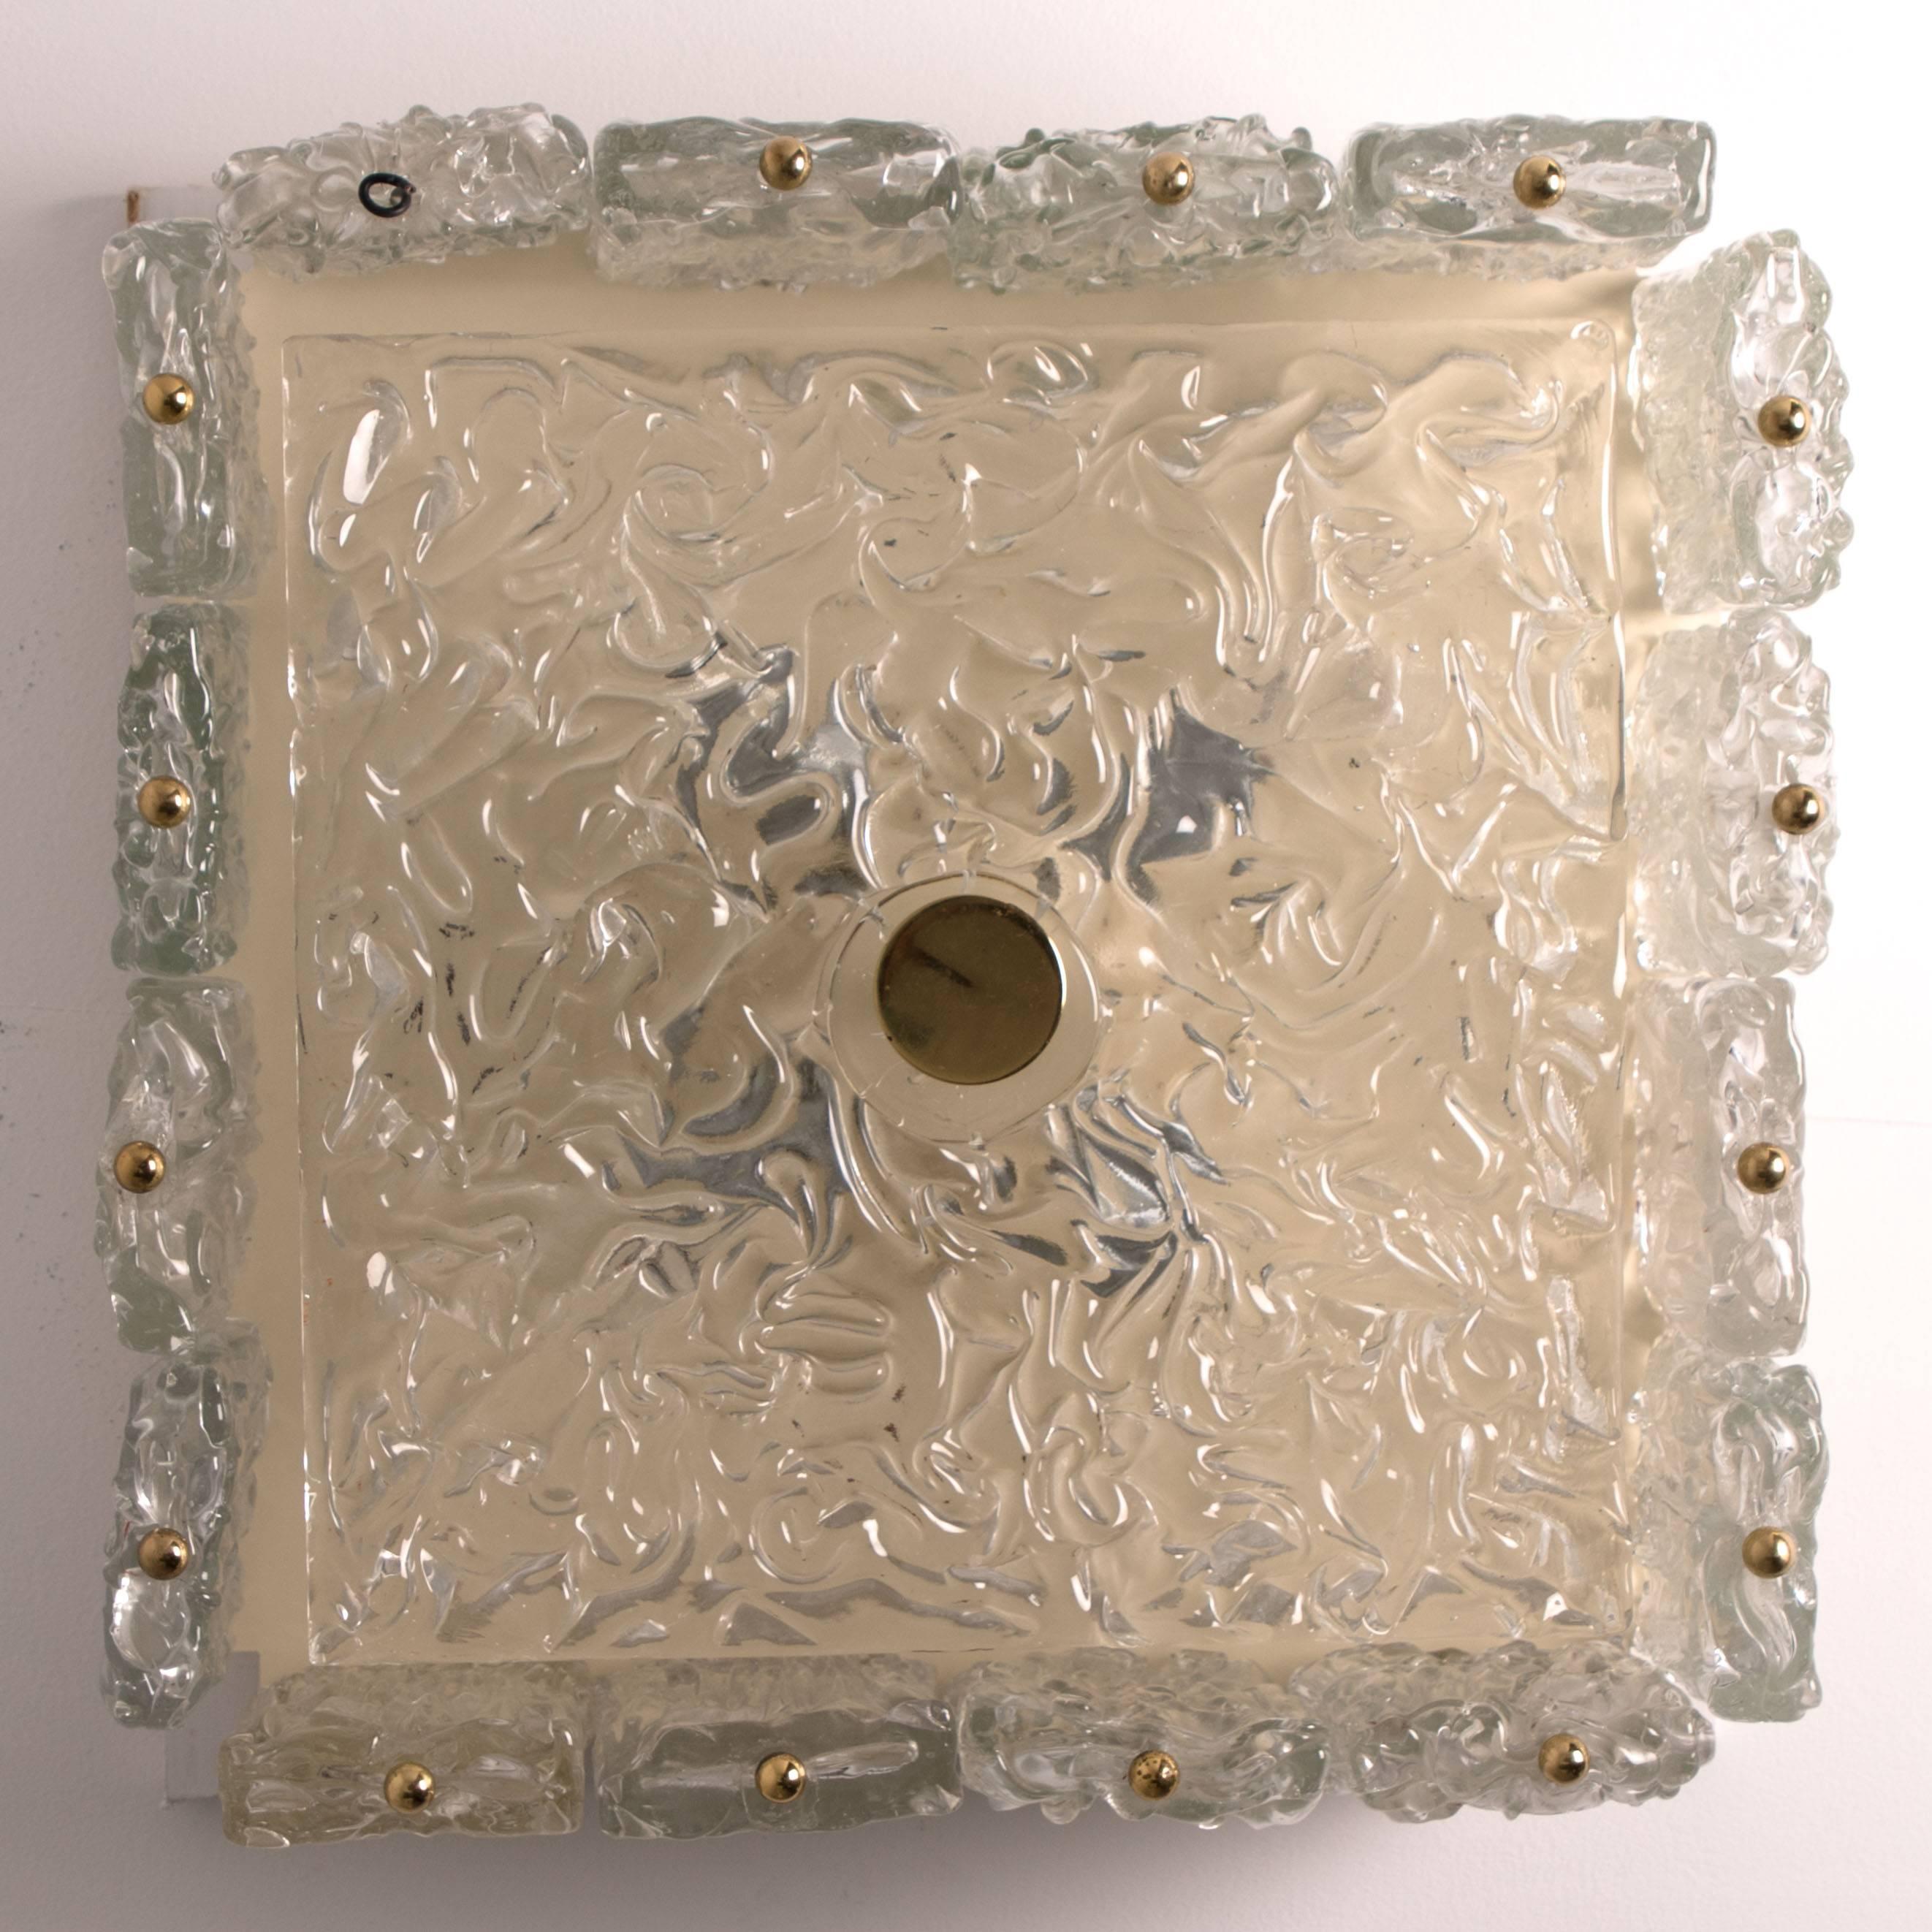 Flush Mount by Vereinigte Werkstätten Glass and Brass Details, 1960s For Sale 1